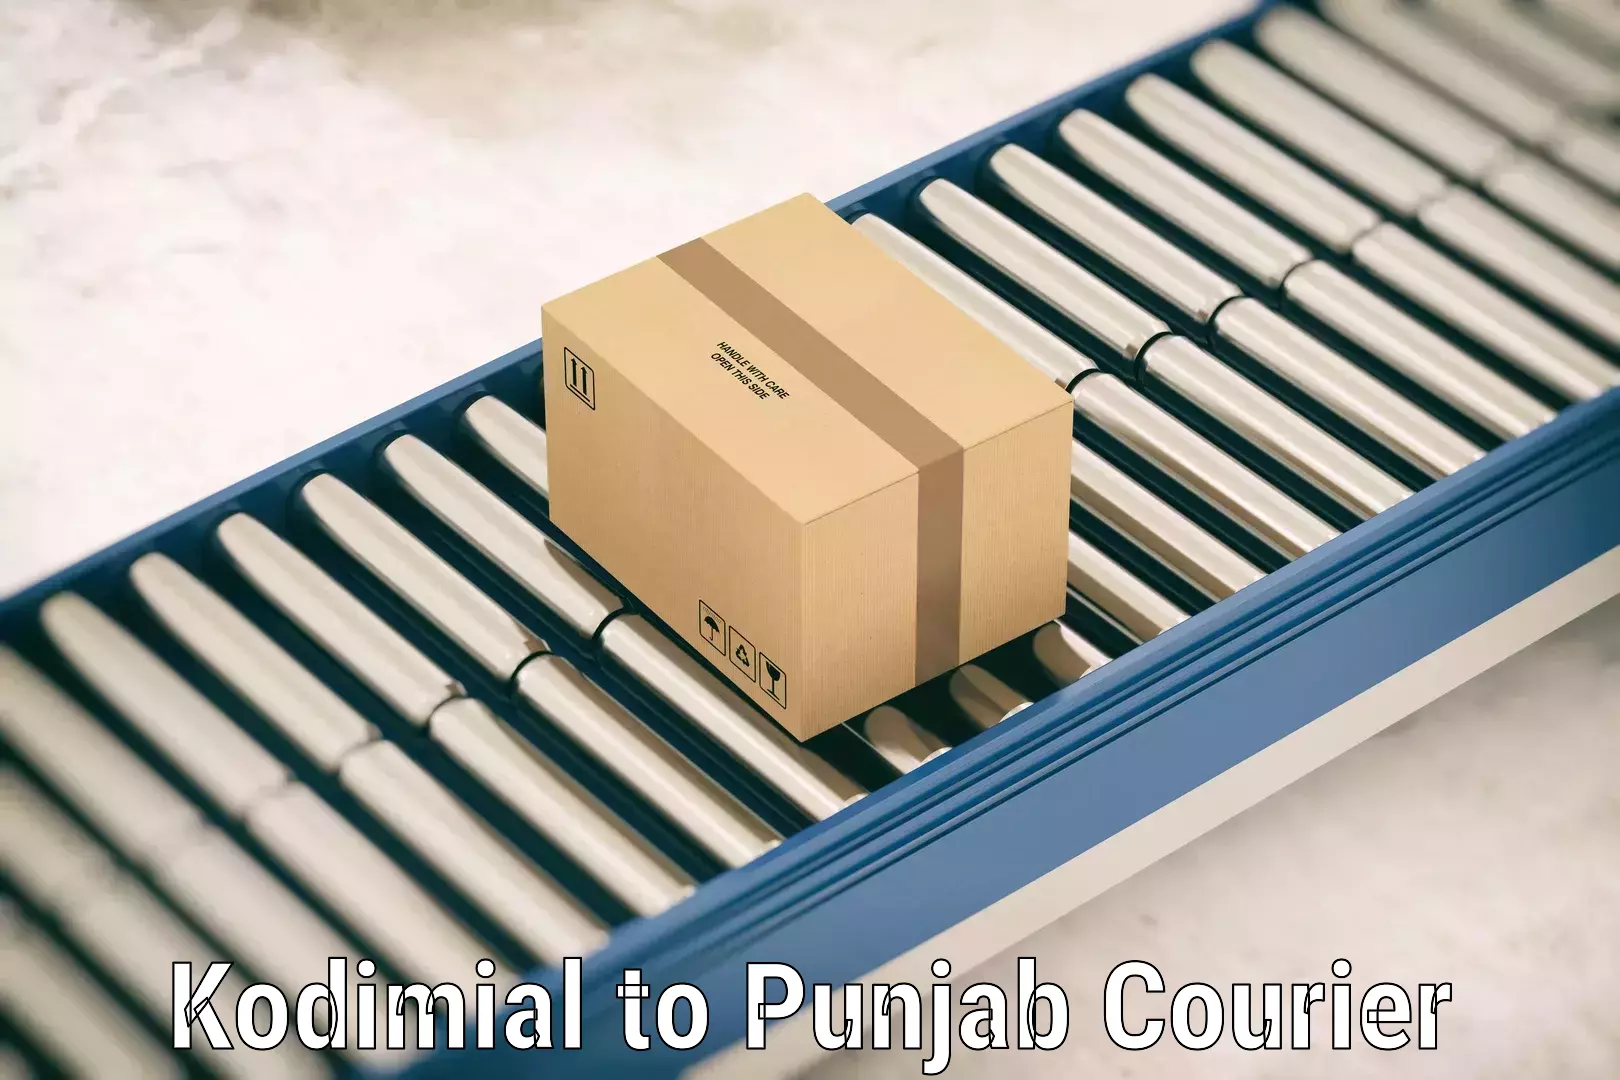 Baggage transport estimate Kodimial to Punjab